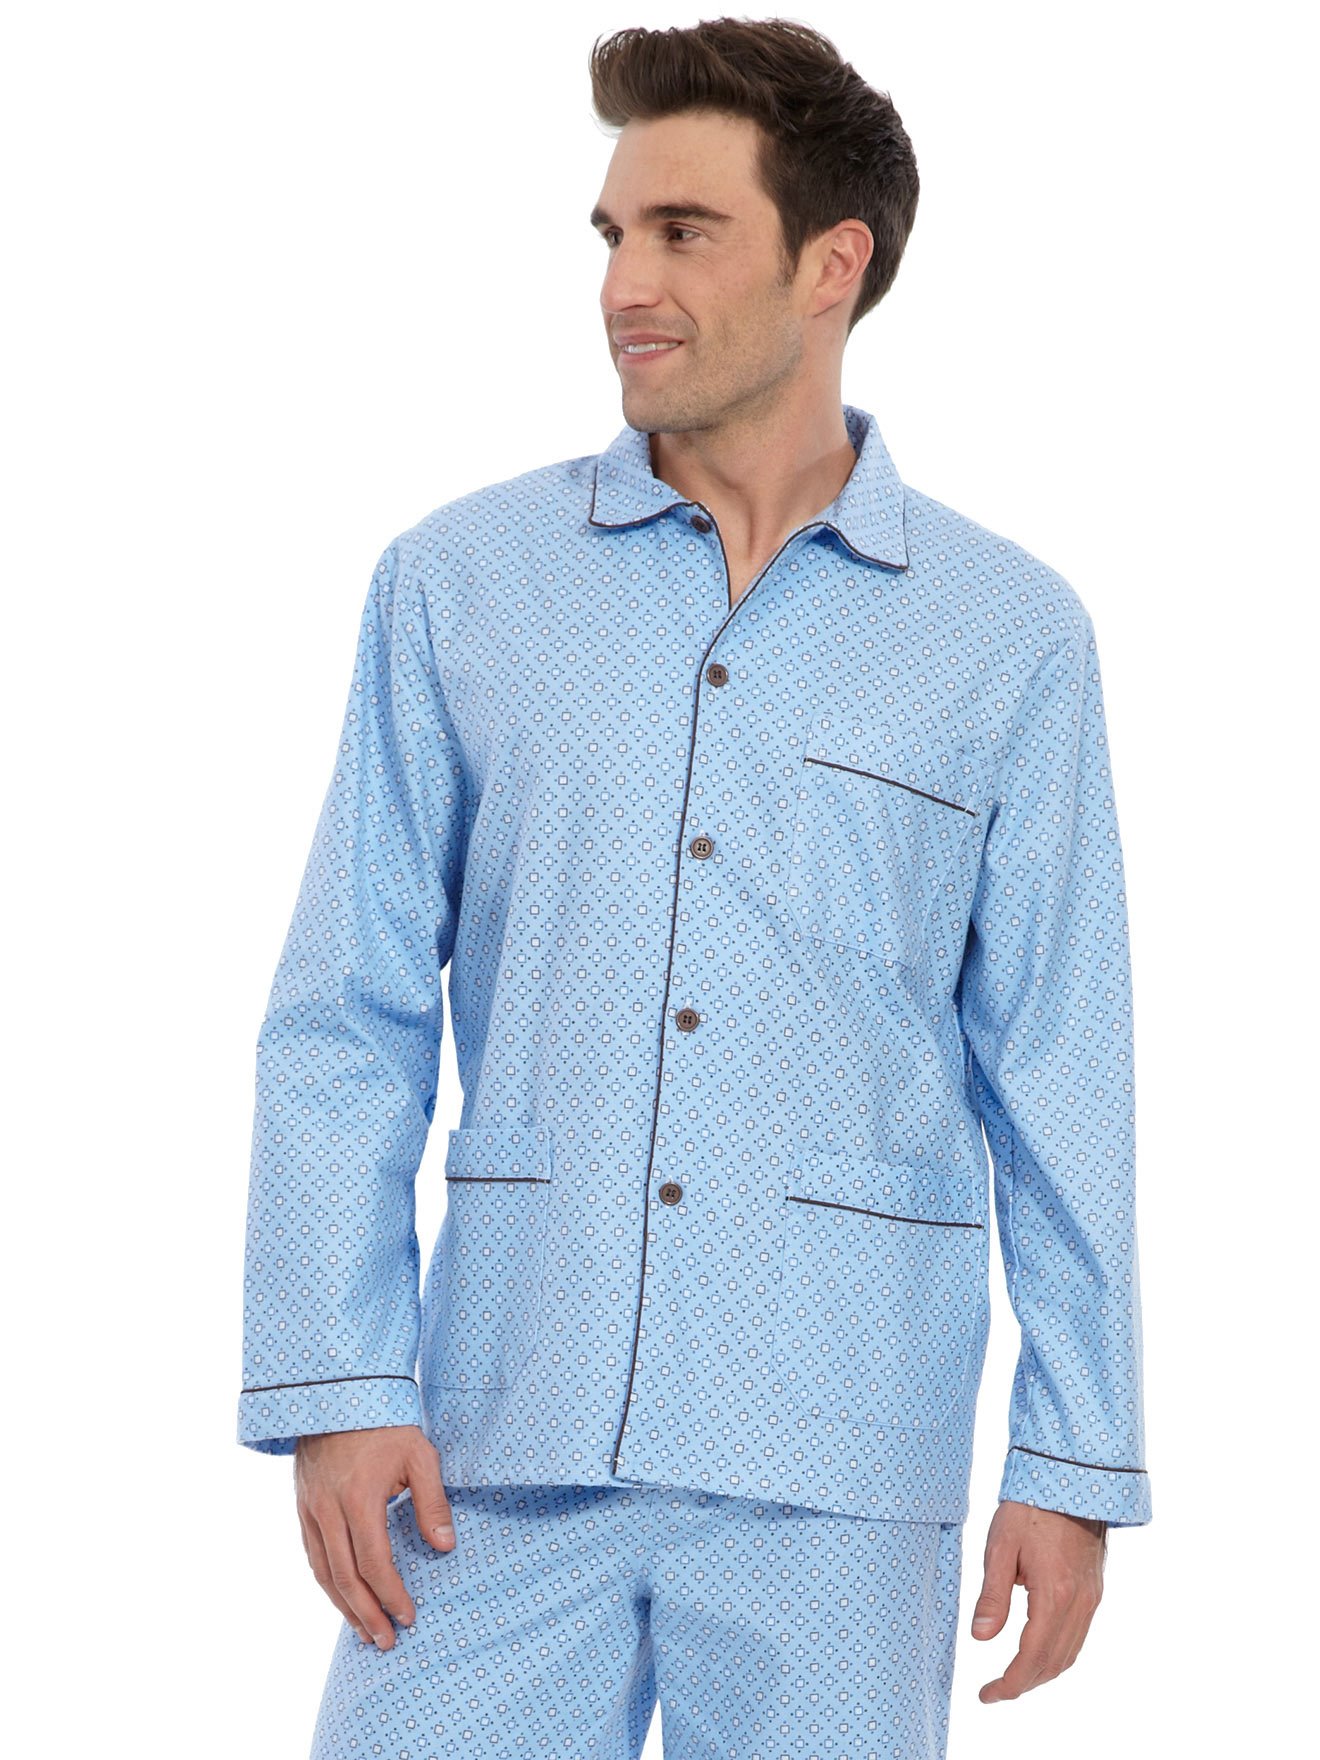 Pyjama en flanelle pur coton - Daxon - Homme